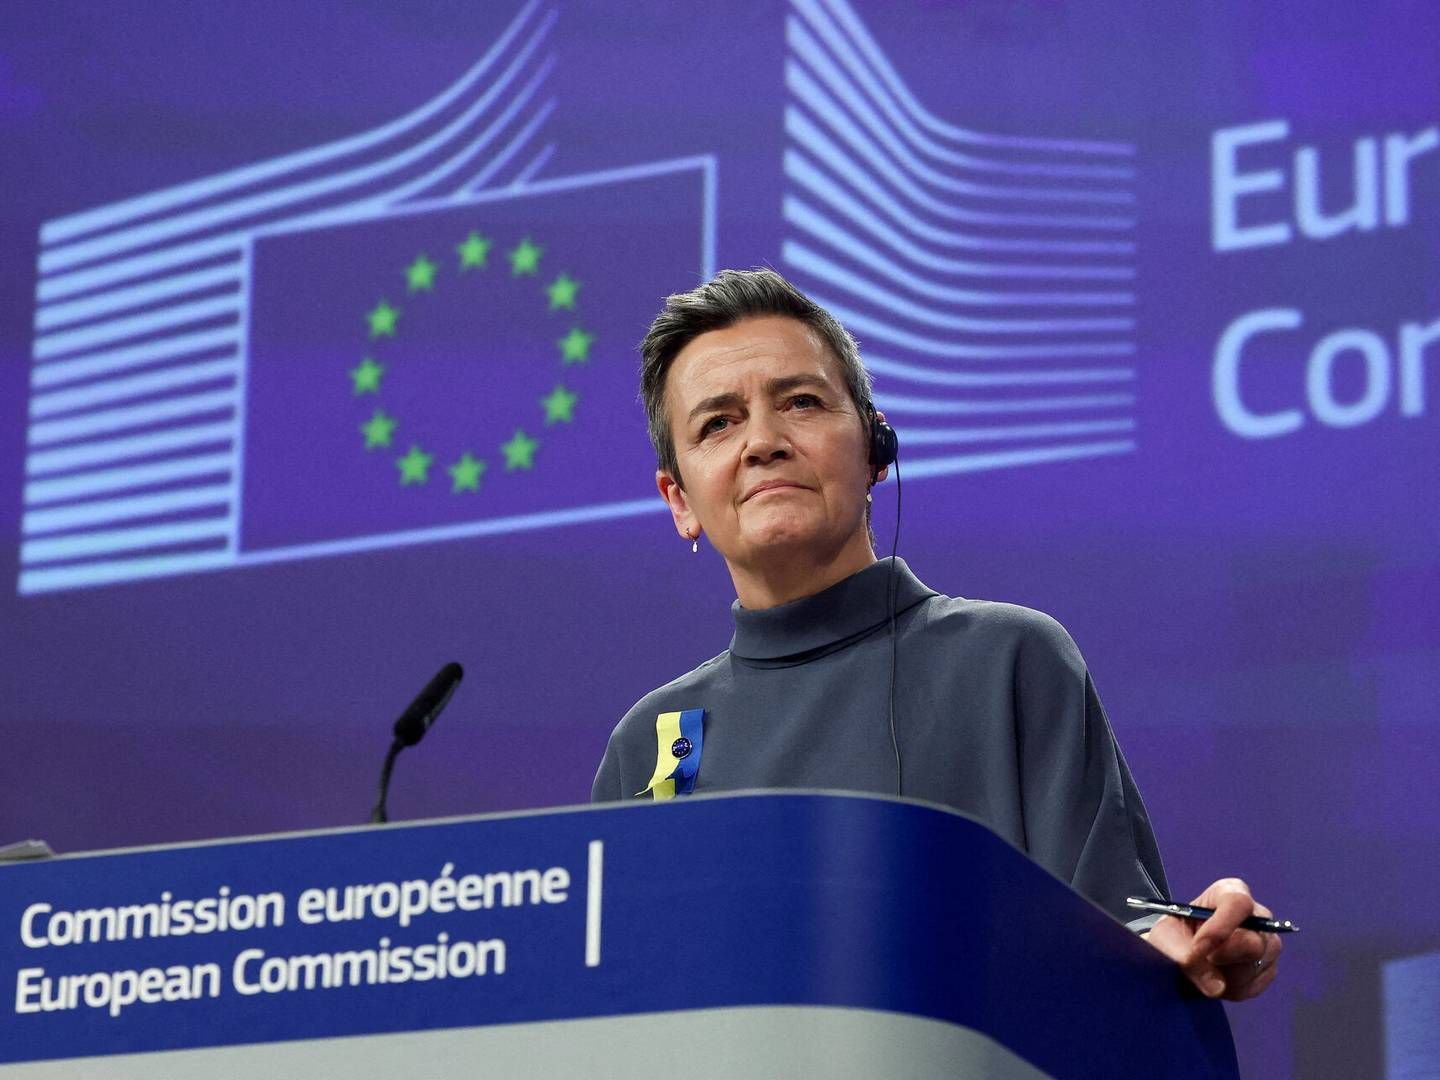 "Vi er kommet meget tættere på forretningsmodellen hos de virksomheder, som især er i søgelyset,” siger Margrethe Vestager, om ny EU-lov. | Foto: Yves Herman/Reuters/Ritzau Scanpix